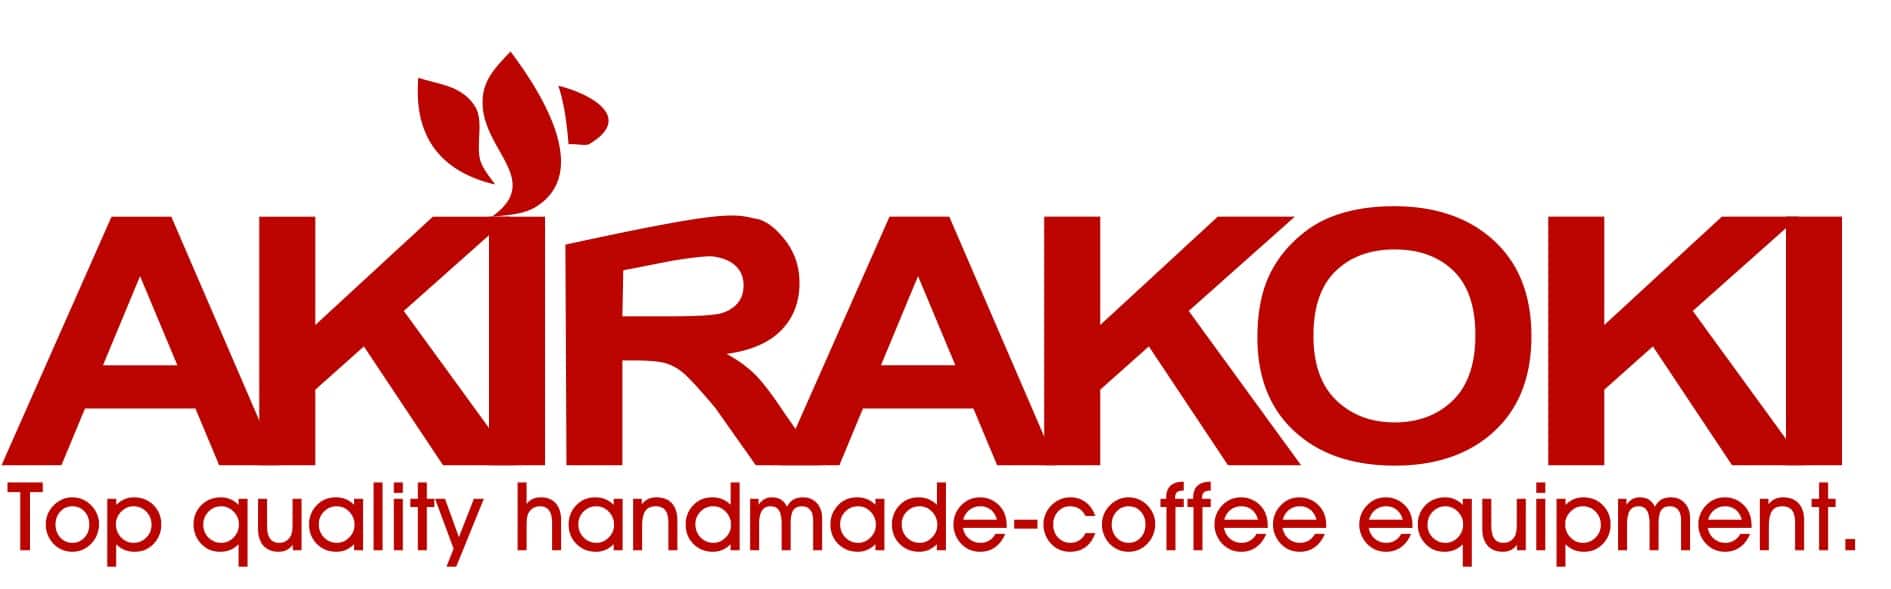 Akirakoki logo